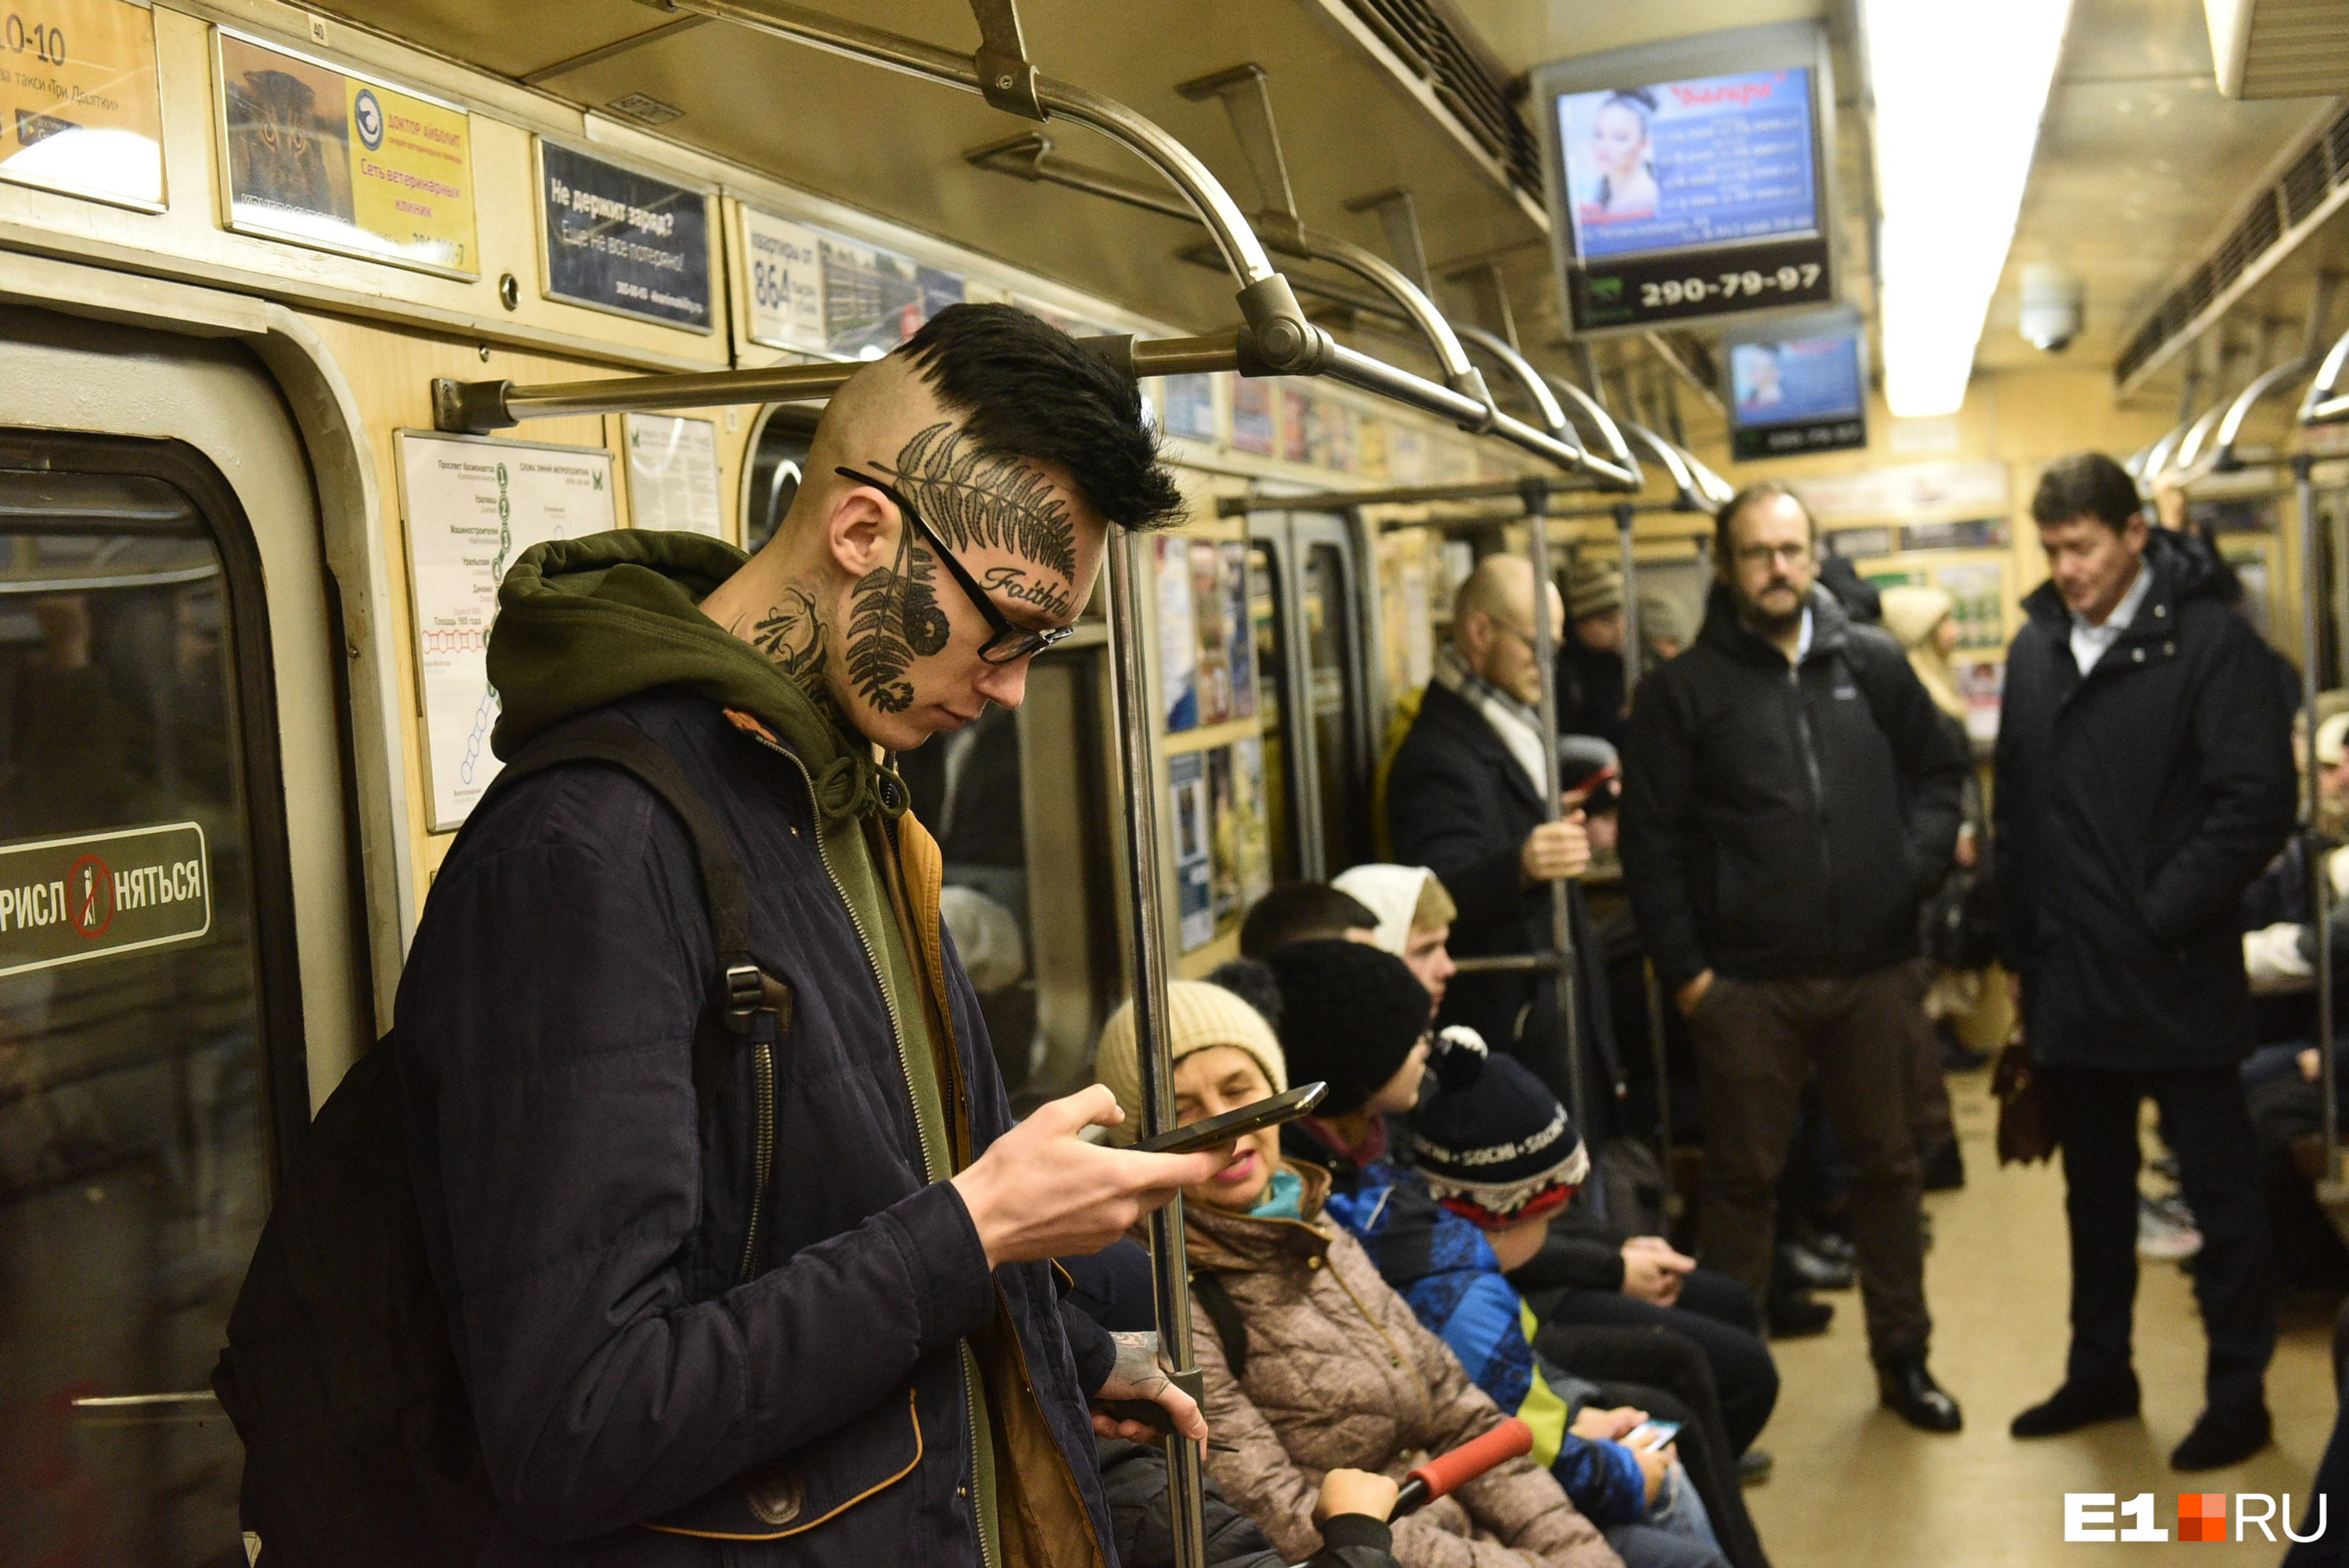 Федерико Паролотто считает, что метро Екатеринбурга недостаточно загружено пассажирами